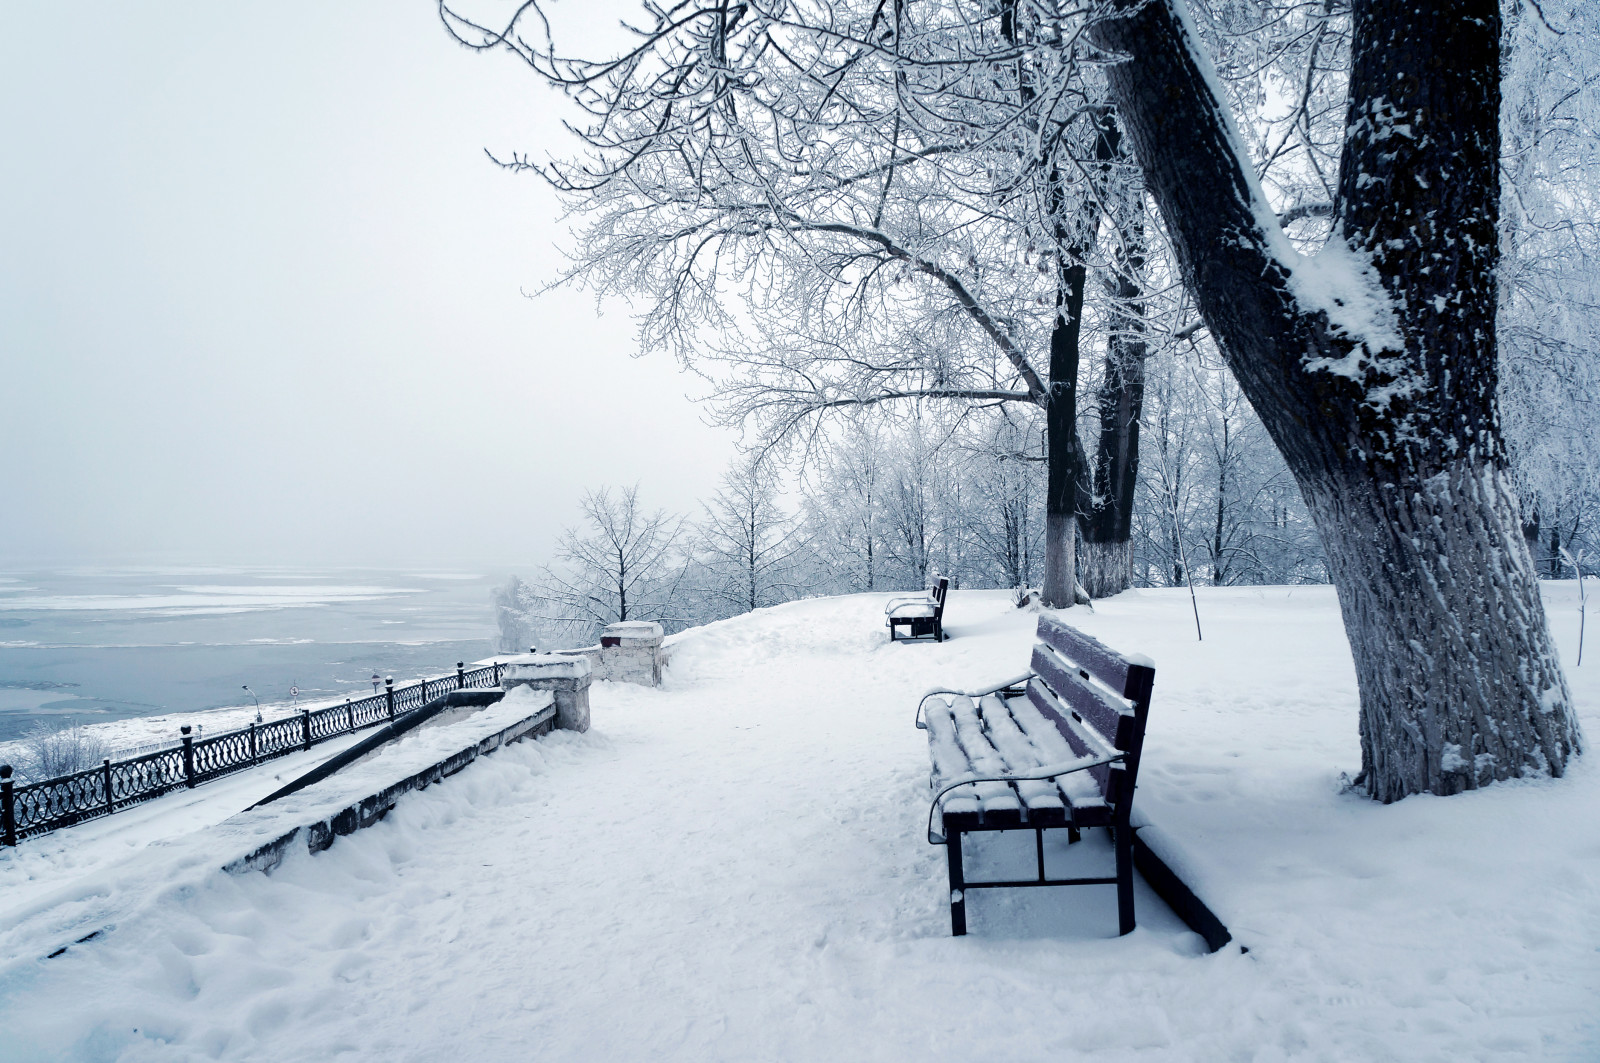 눈, 자연, 겨울, 사진, 벤치, 나무의 줄기